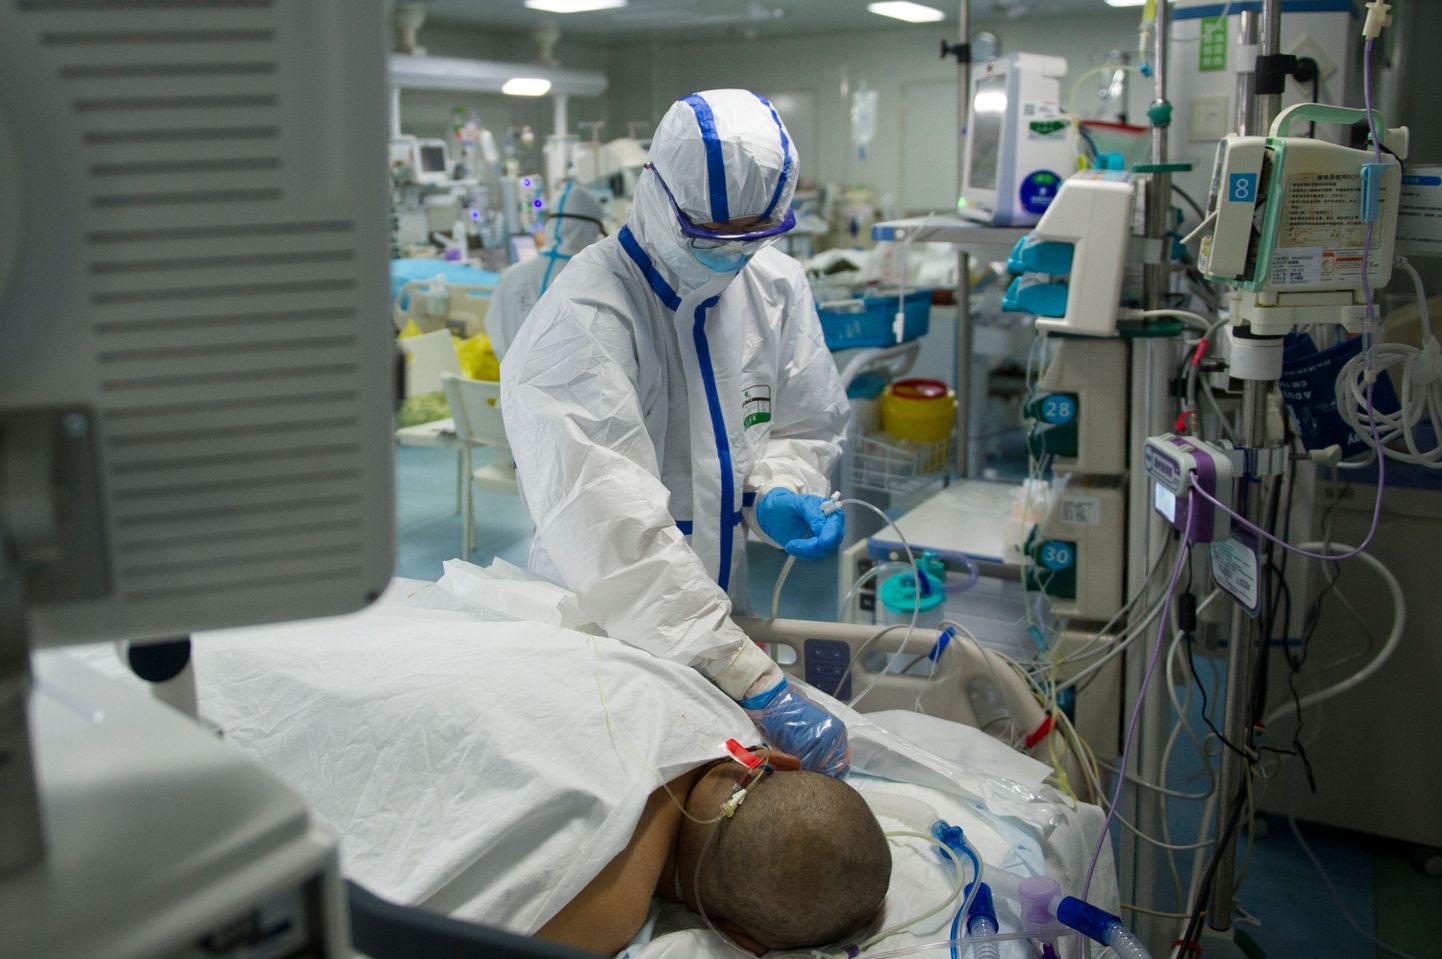 Tänaseks on Hiina teatanud 2715 koroonaviiruse tõttu surnud inimesest. Wuhani haiglas on endiselt kibekiired päevad.